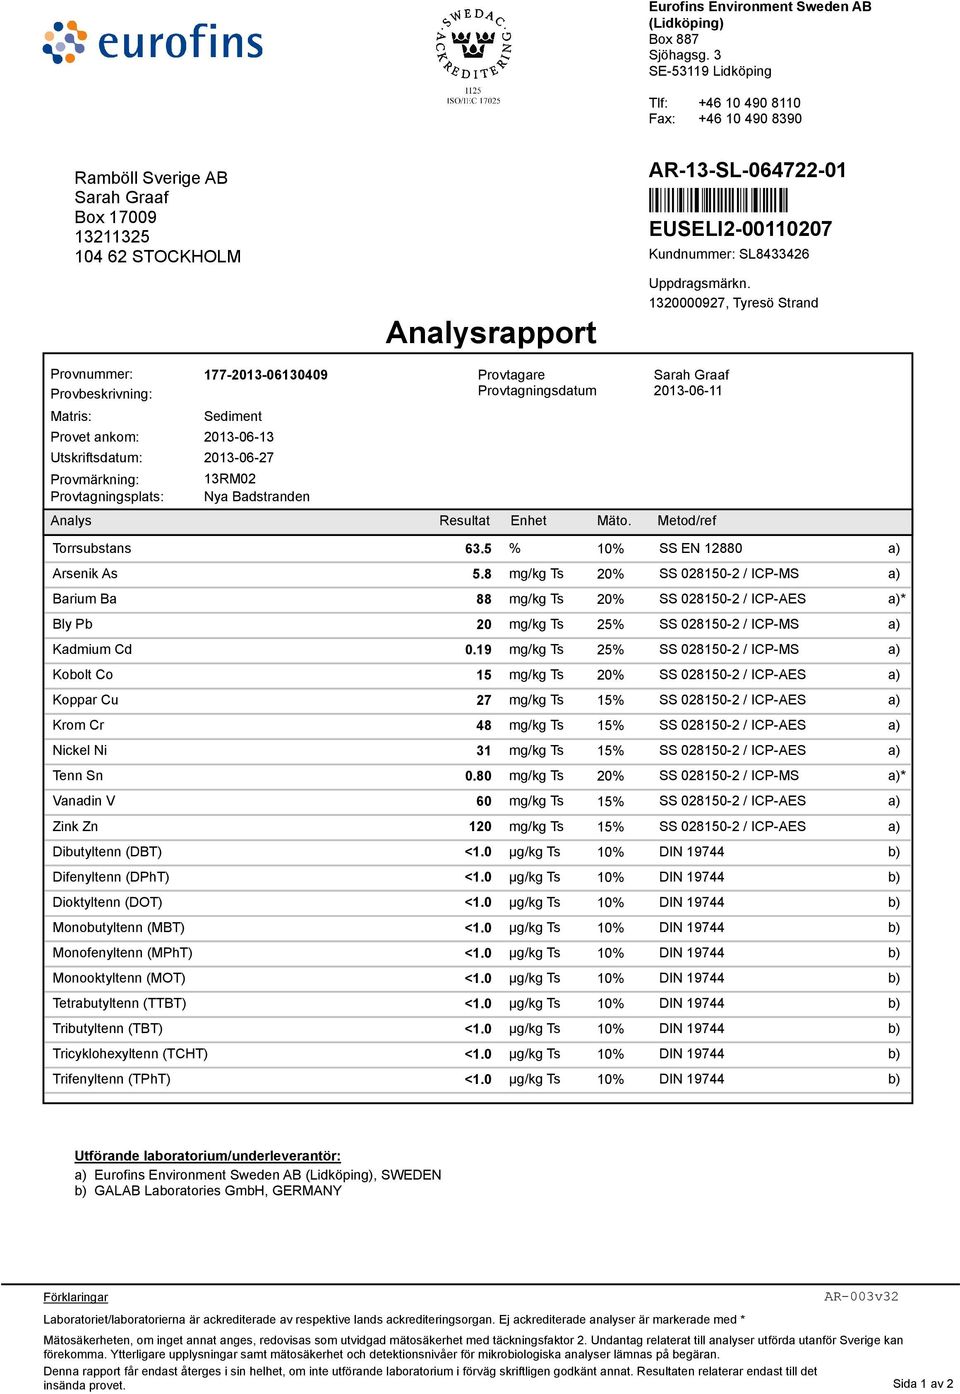 Nya Badstranden Analysrapport Provtagare Provtagningsdatum Uppdragsmärkn. 1320000927, Tyresö Strand 2013-06-11 Analys Resultat Enhet Mäto. Metod/ref Torrsubstans 63.5 % 10% SS EN 12880 Arsenik As 5.